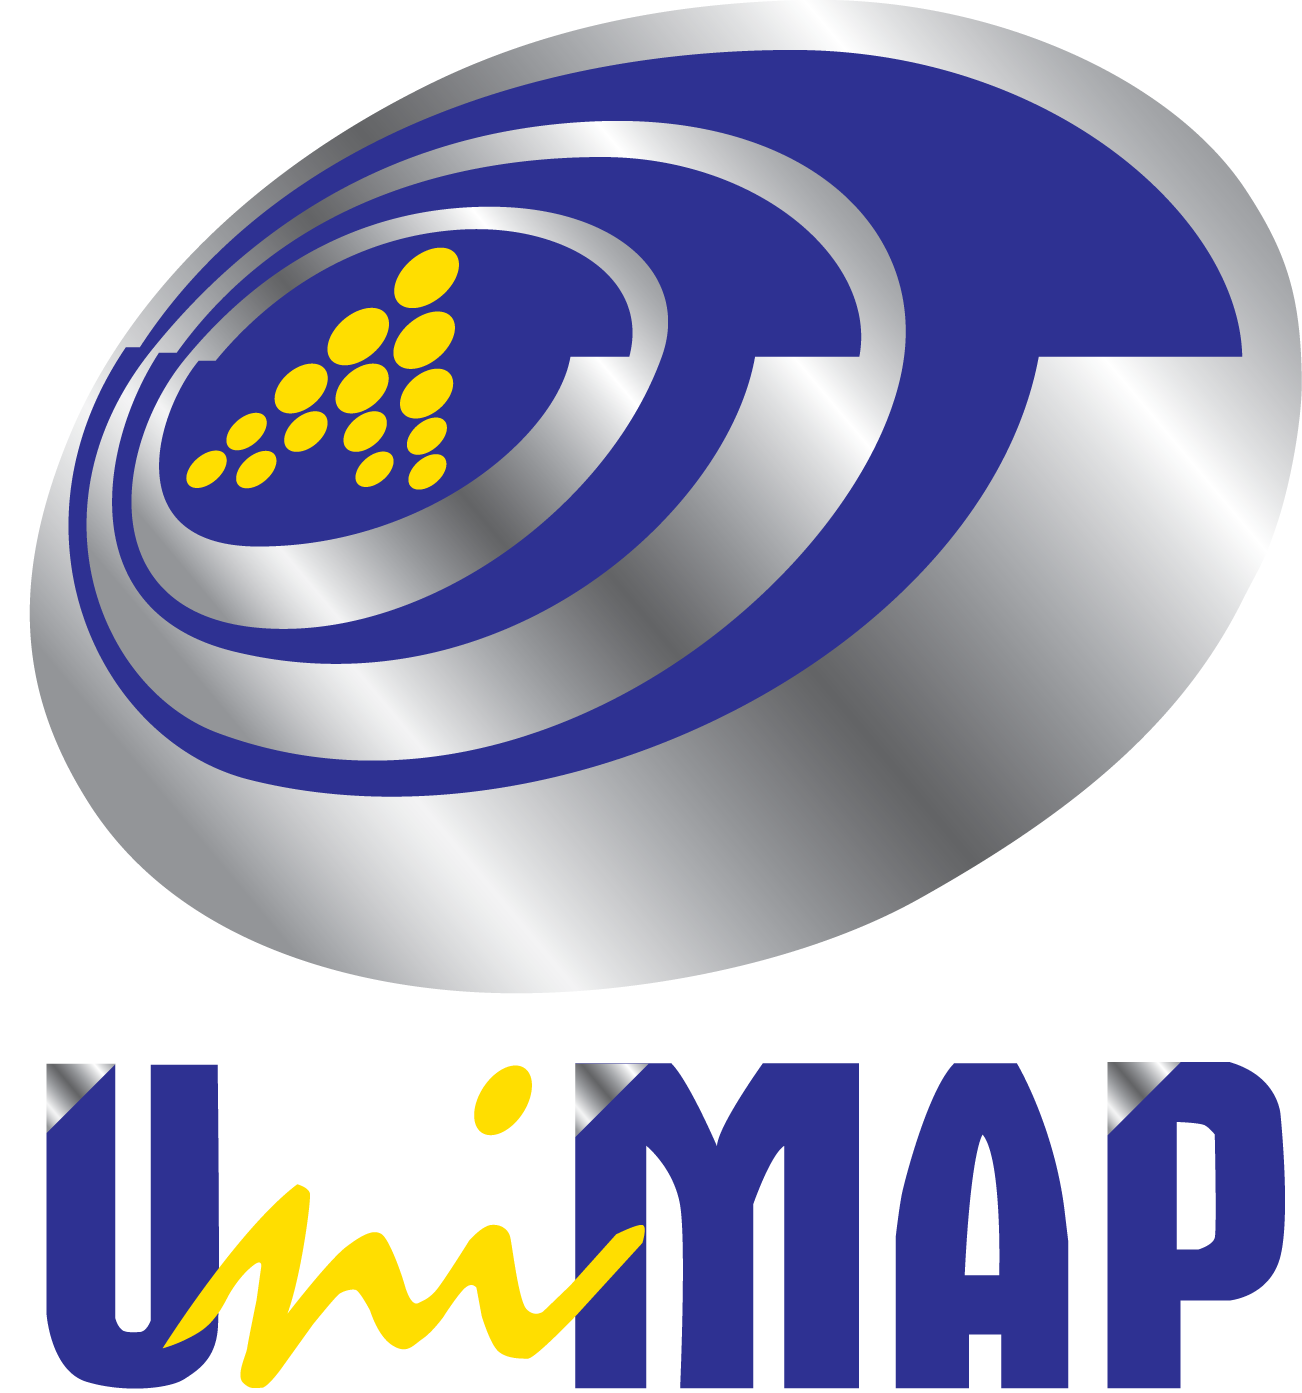 Universiti Malaysia Perlis (UniMAP) logo